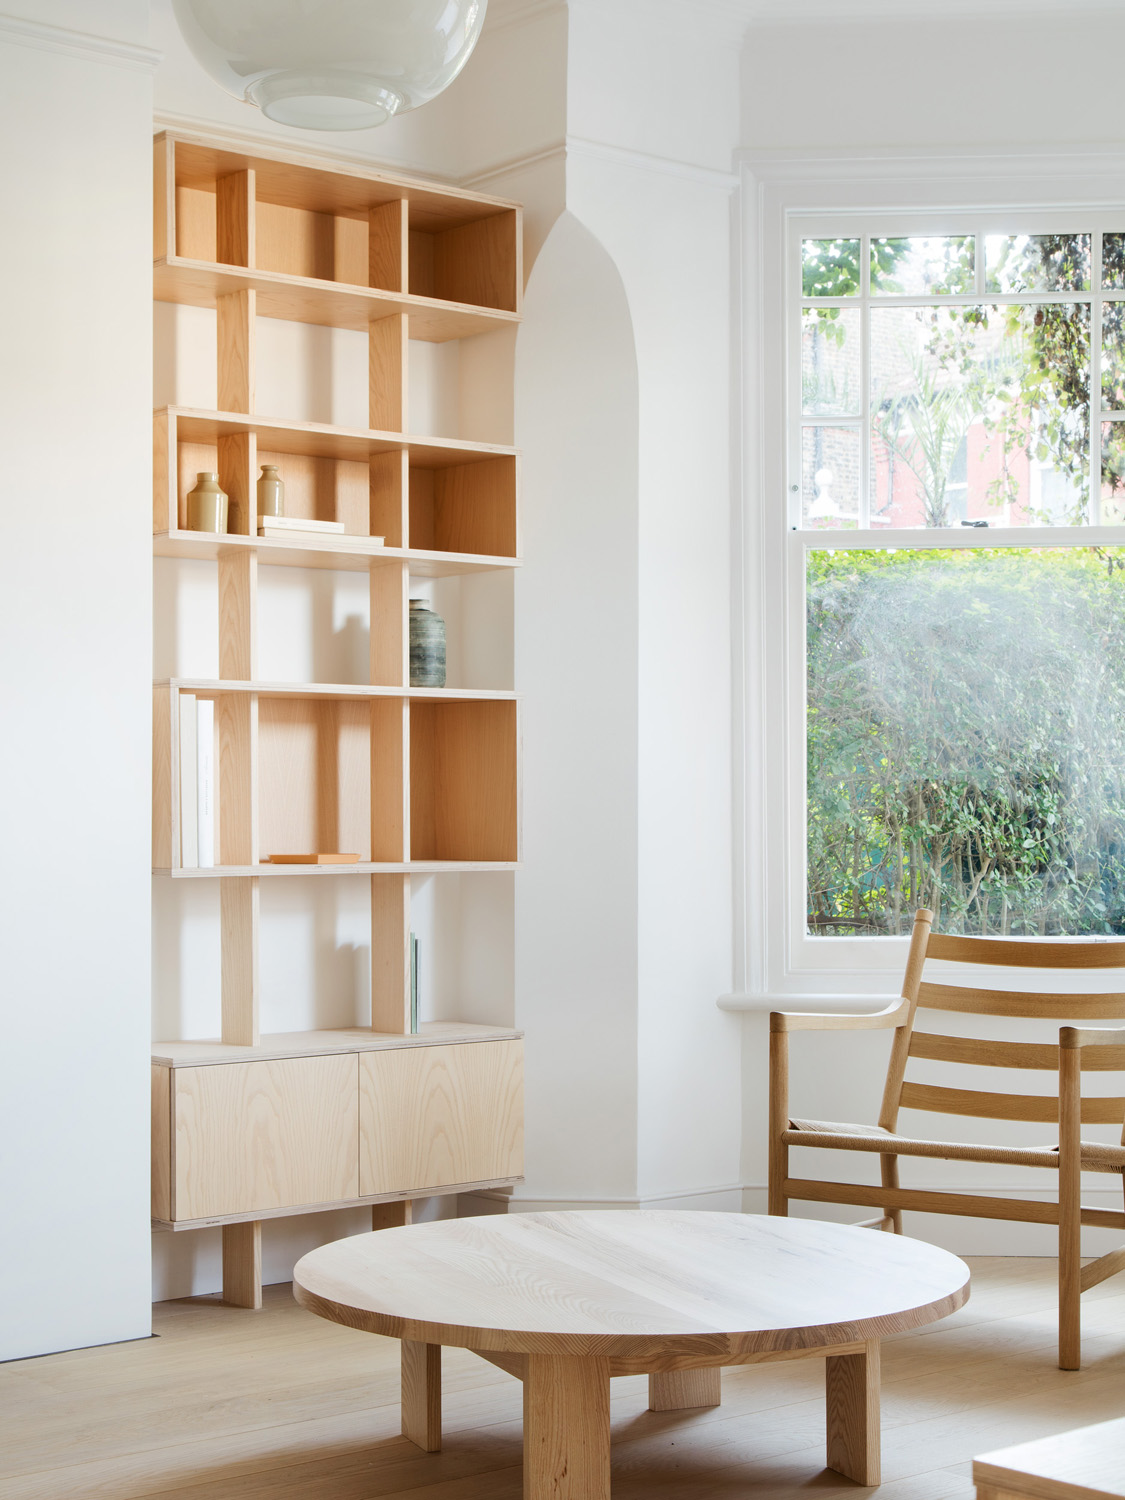 Bookshelf by O'Sullivan Skoufoglou Architects - contemporary architecture and interior design studio in London